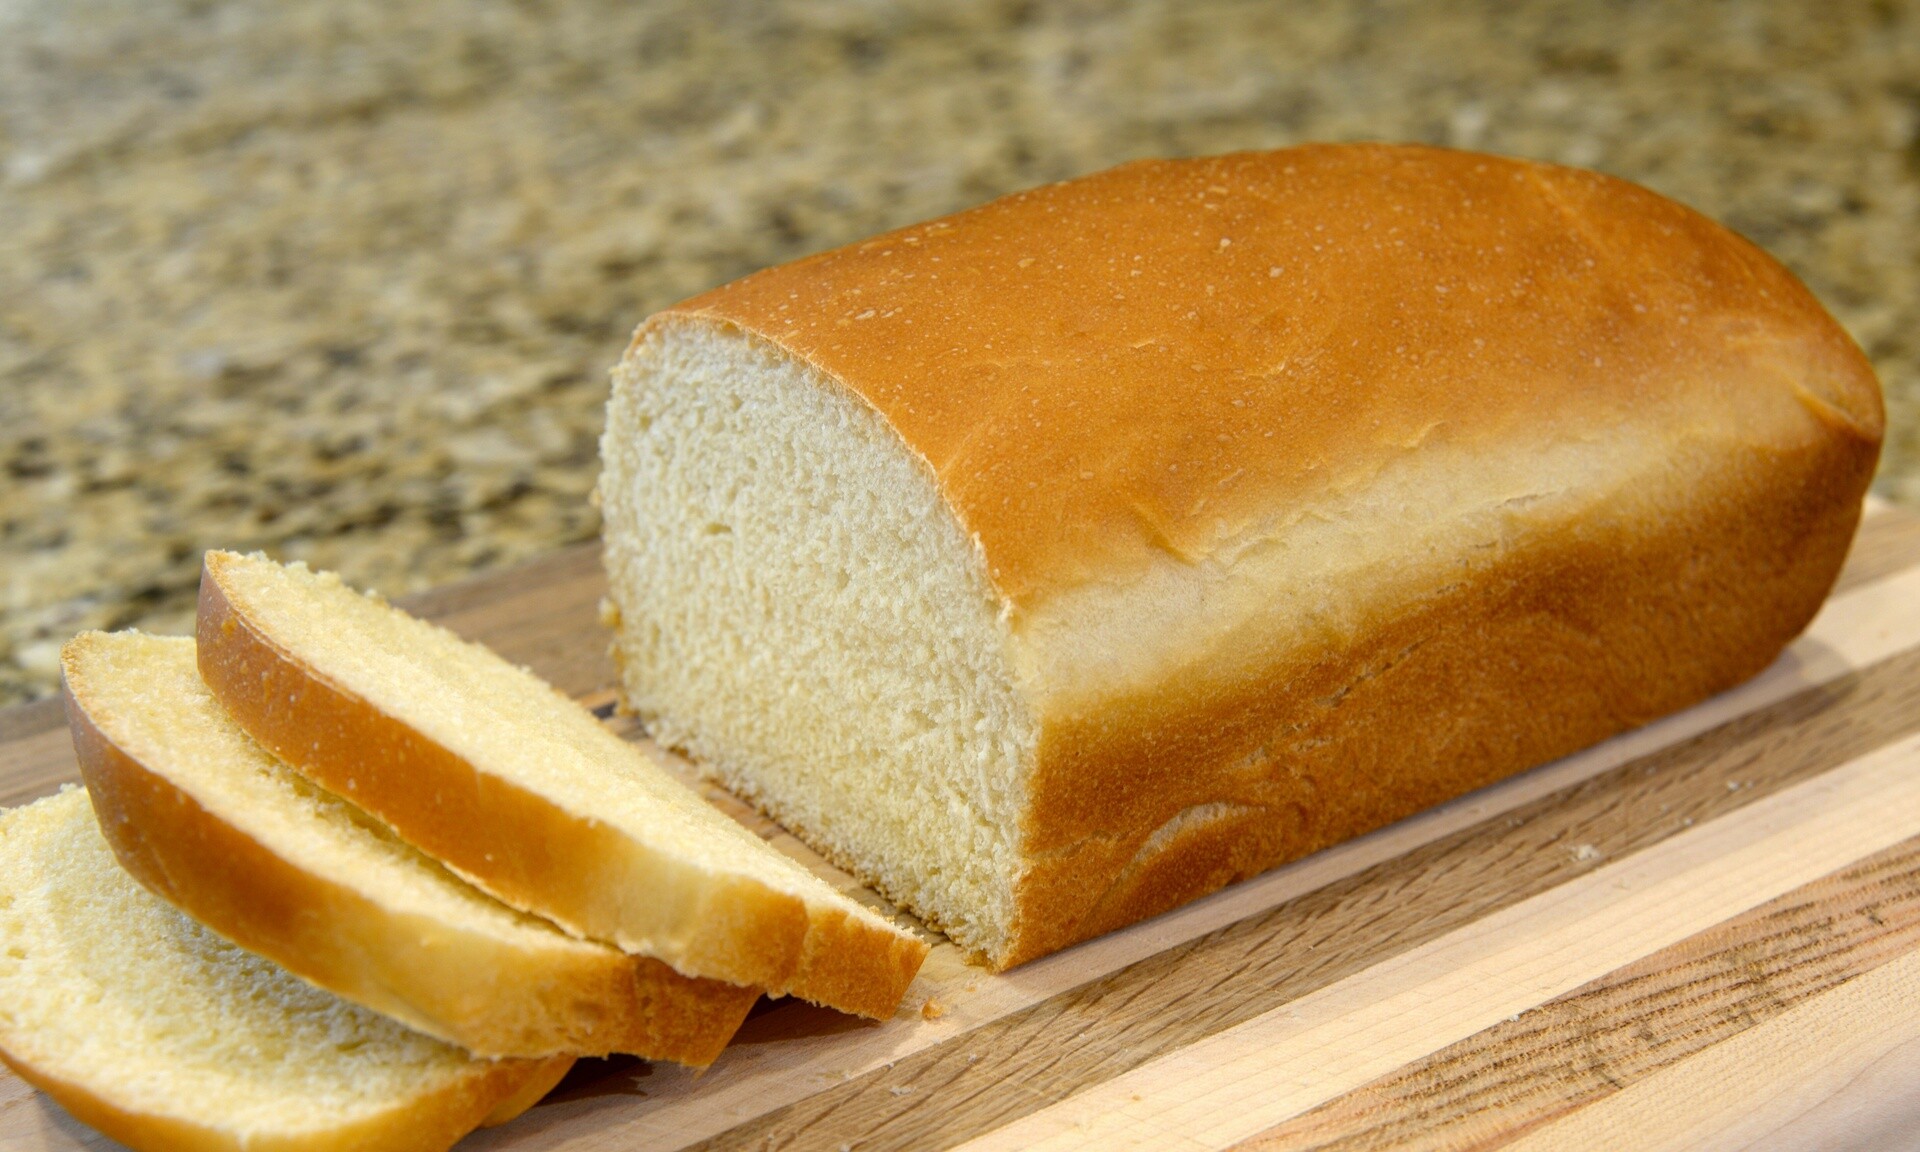 Έτσι θα είναι το νέο λευκό ψωμί - Επιστήμονες θέλουν να το κάνουν πιο υγιεινό